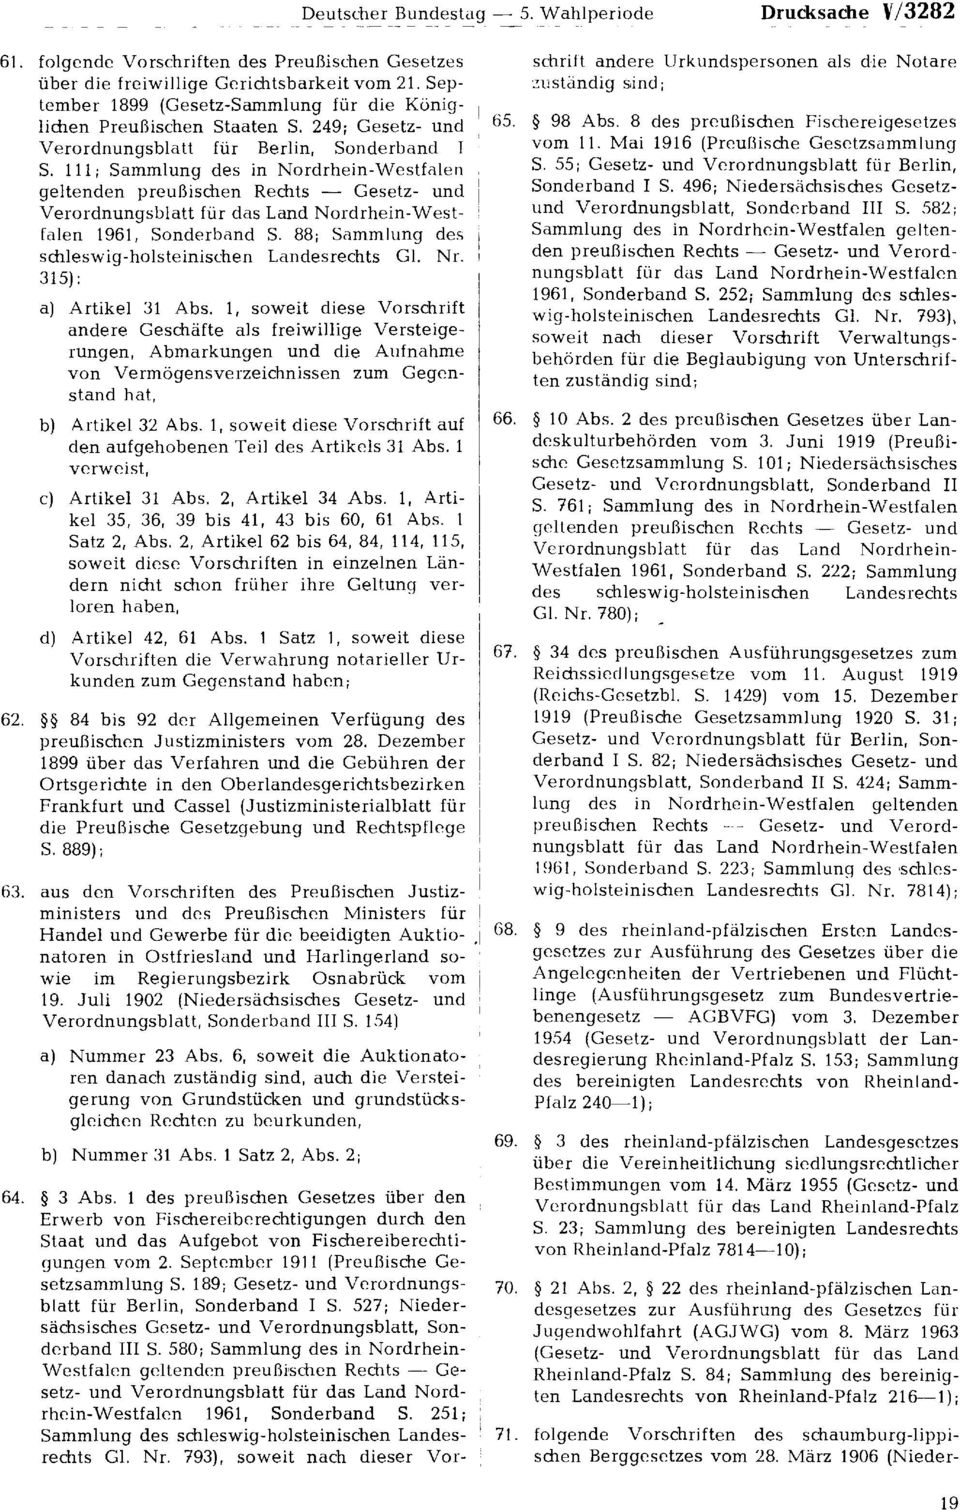 111; Sammlung des in Nordrhein-Westfalen geltenden preußischen Rechts Gesetz- und Verordnungsblatt für das Land Nordrhein-Westfalen 1961, Sonderband S.